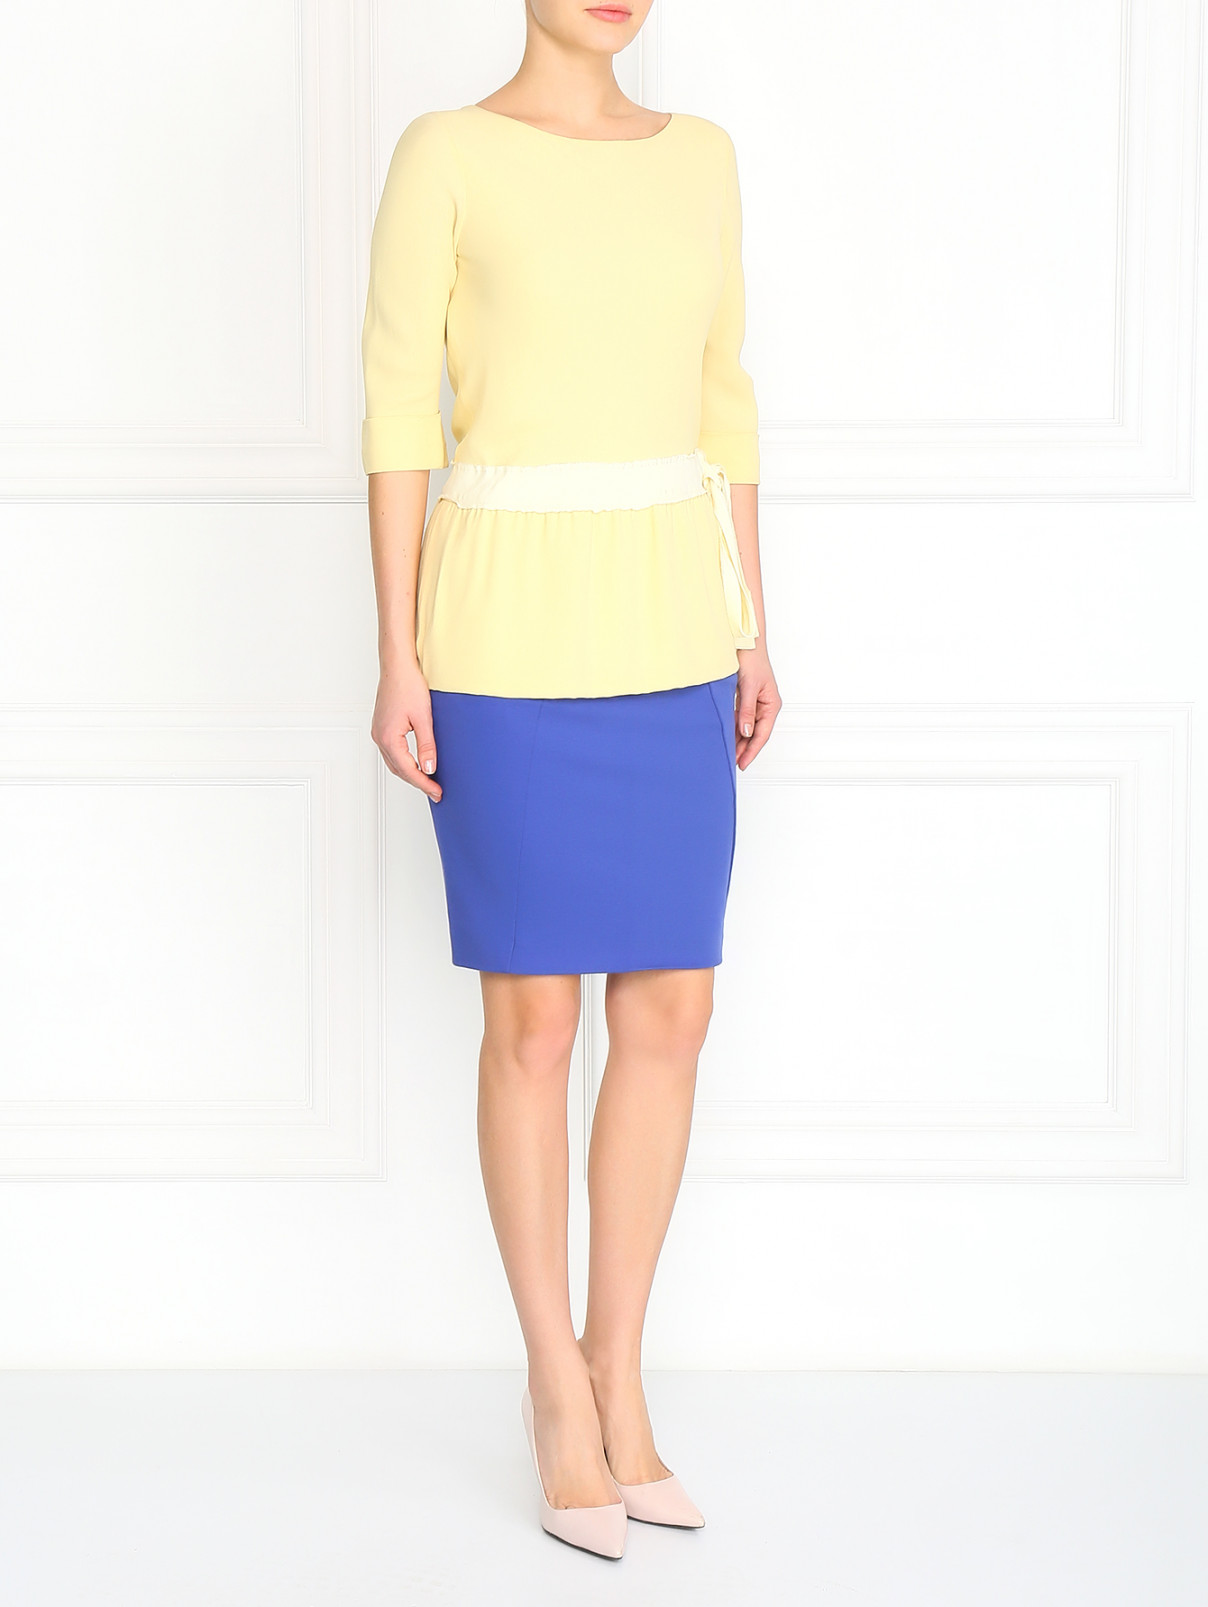 Блуза с кулиской на талии Moschino  –  Модель Общий вид  – Цвет:  Желтый